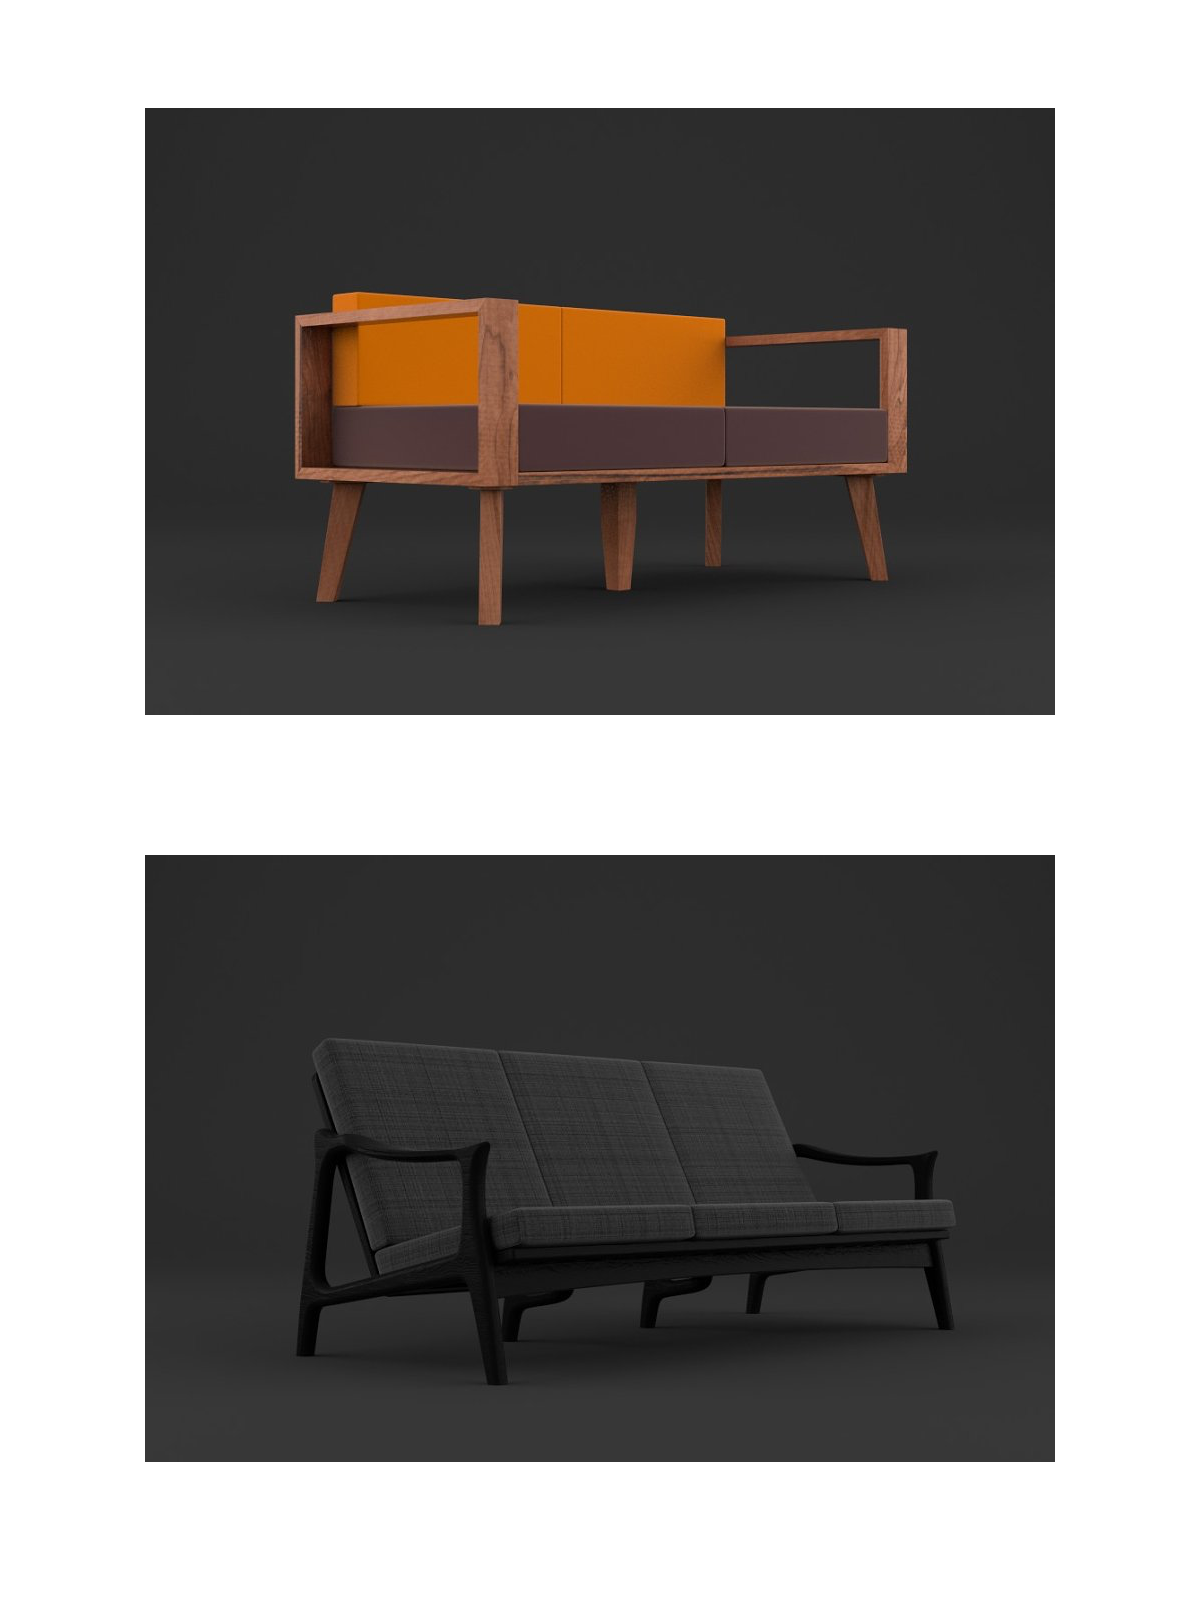 3d models for blender 5 modern sofas pinterest image preview.